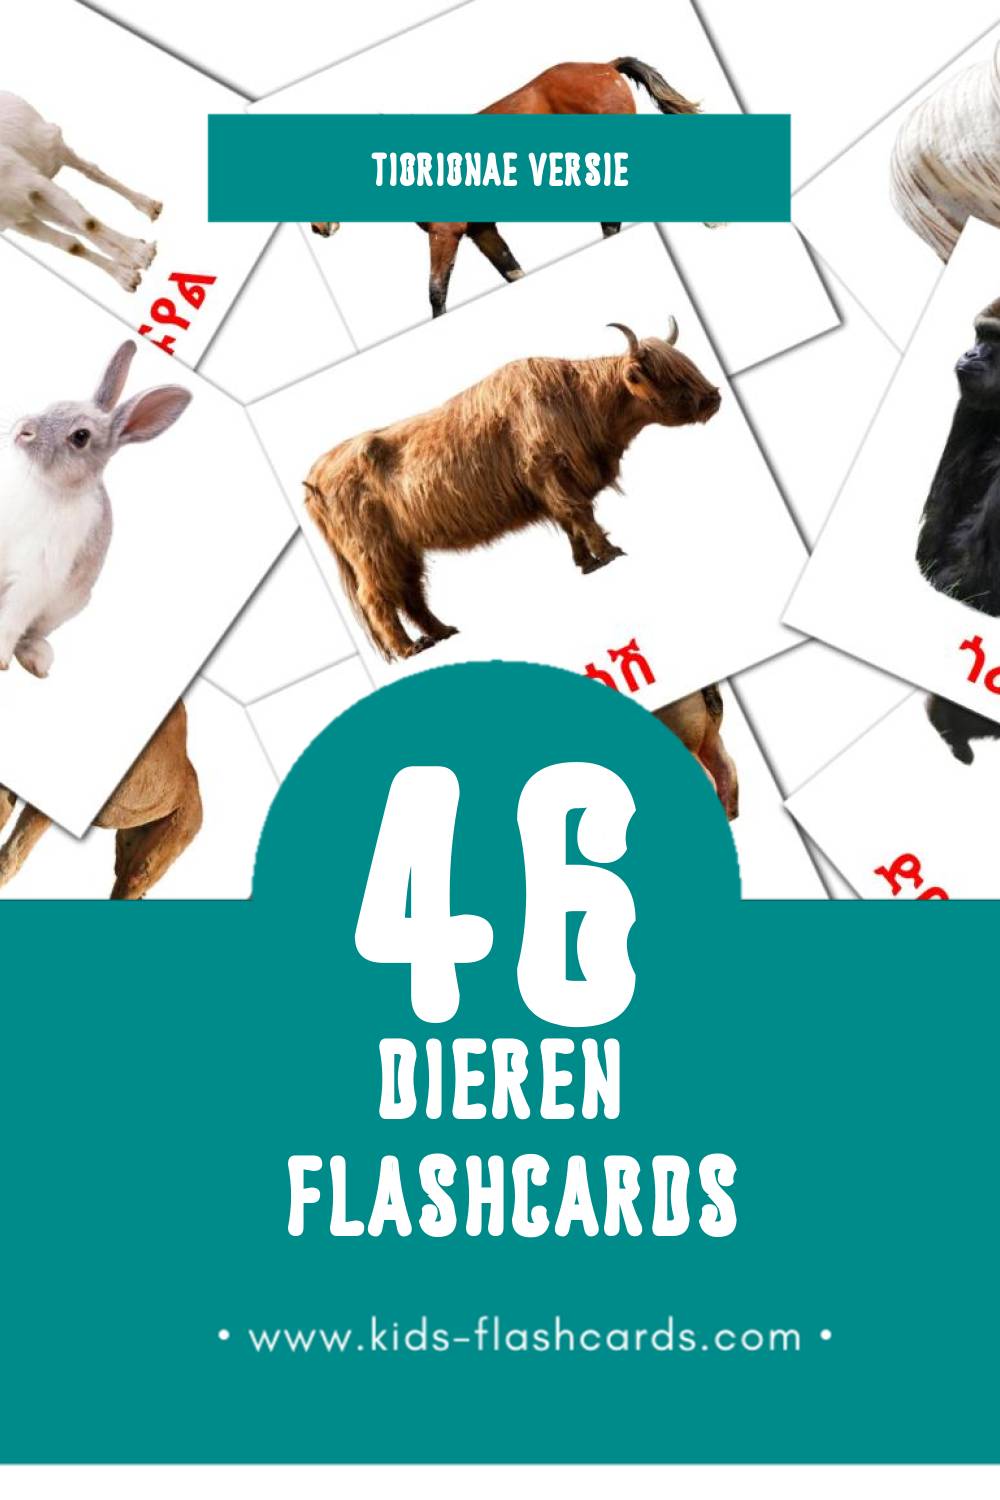 Visuele እንስሳት Flashcards voor Kleuters (112 kaarten in het Tigrigna)